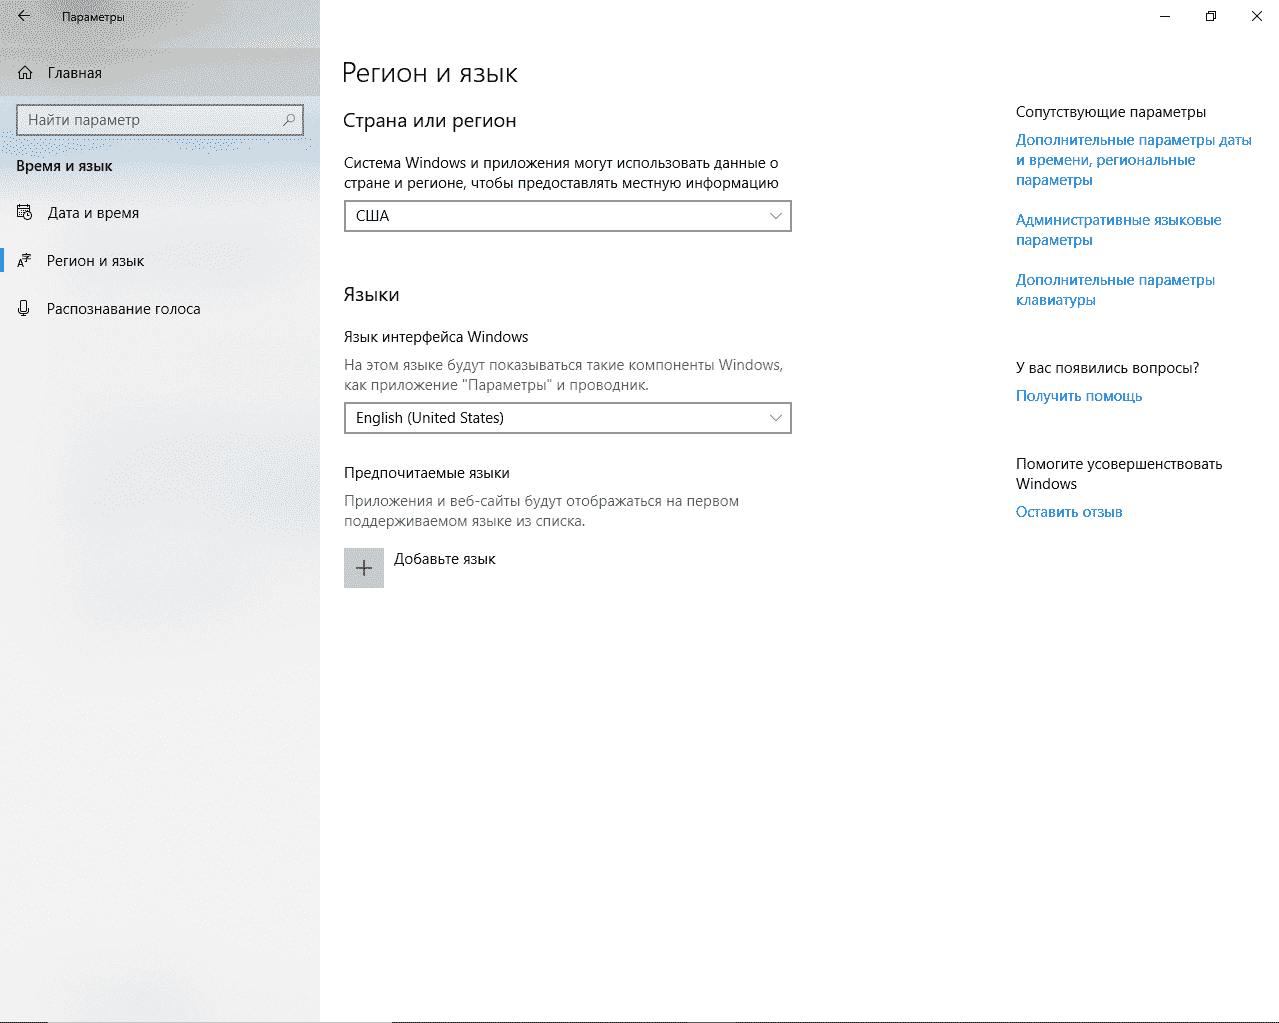 Windows 10 Can't change interface Language/Add a new language keyboard. 54b51f0f-3696-490f-aa7b-30e6e1a77fd3?upload=true.png